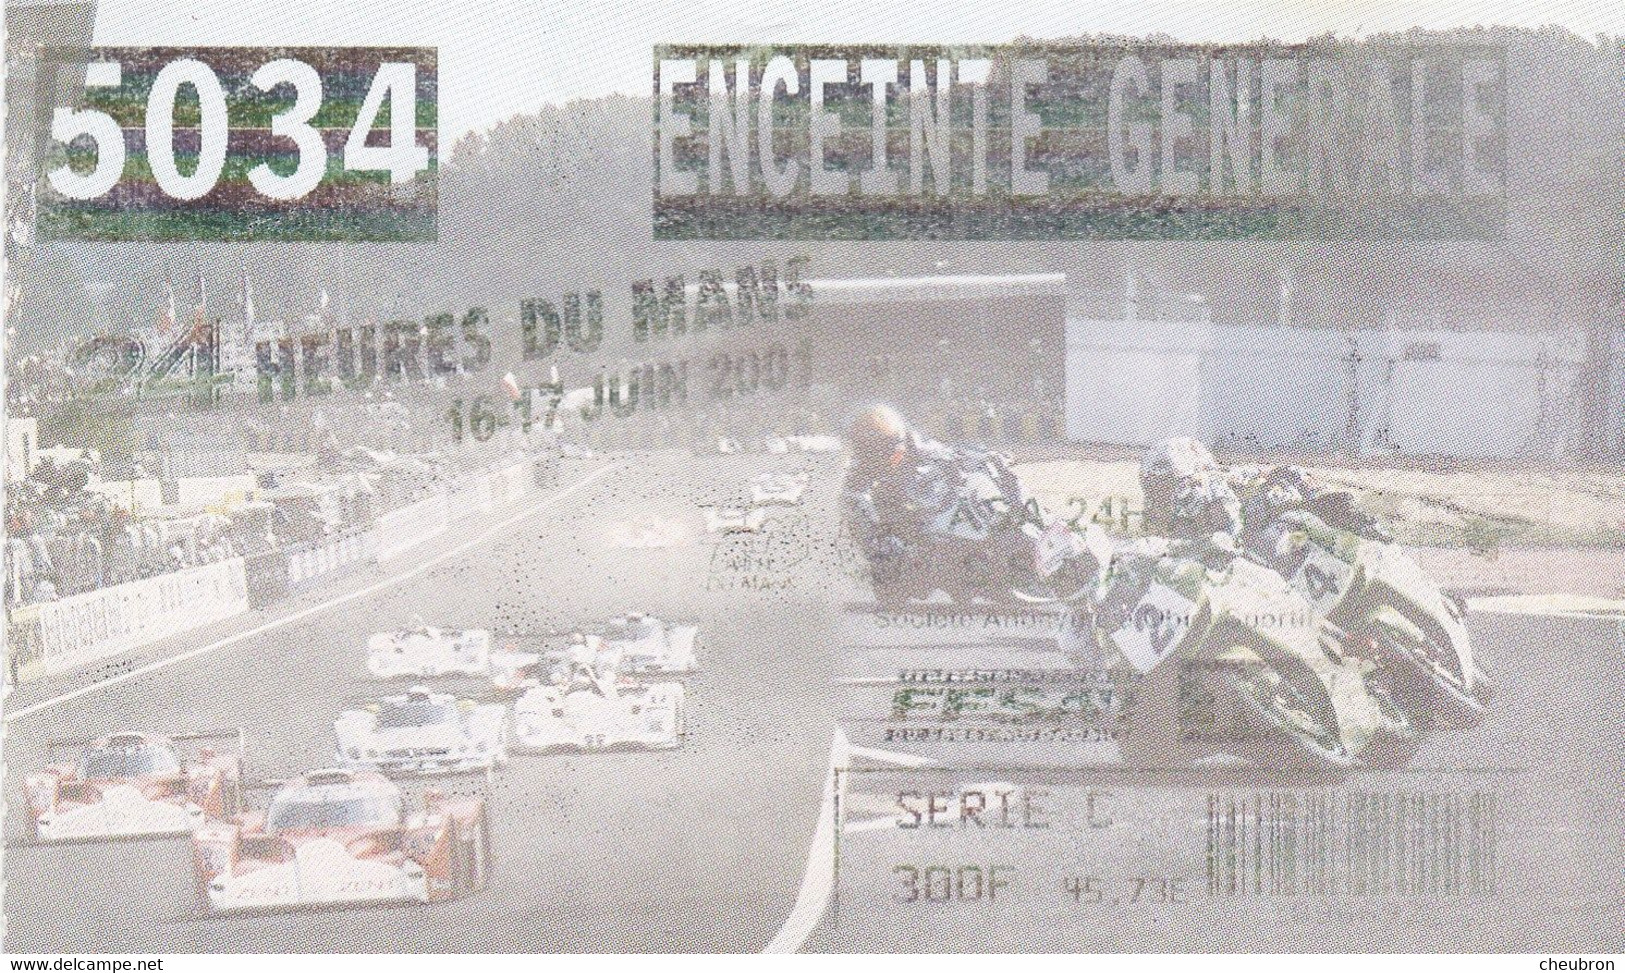 SPORT AUTO. 24 HEURES DU MANS 2001. LA BILLETTERIE. BILLET D'ACCES ENCEINTE GENERALE. N° 5034. FORMAT 12.5 X 7.5 - Automobile - F1